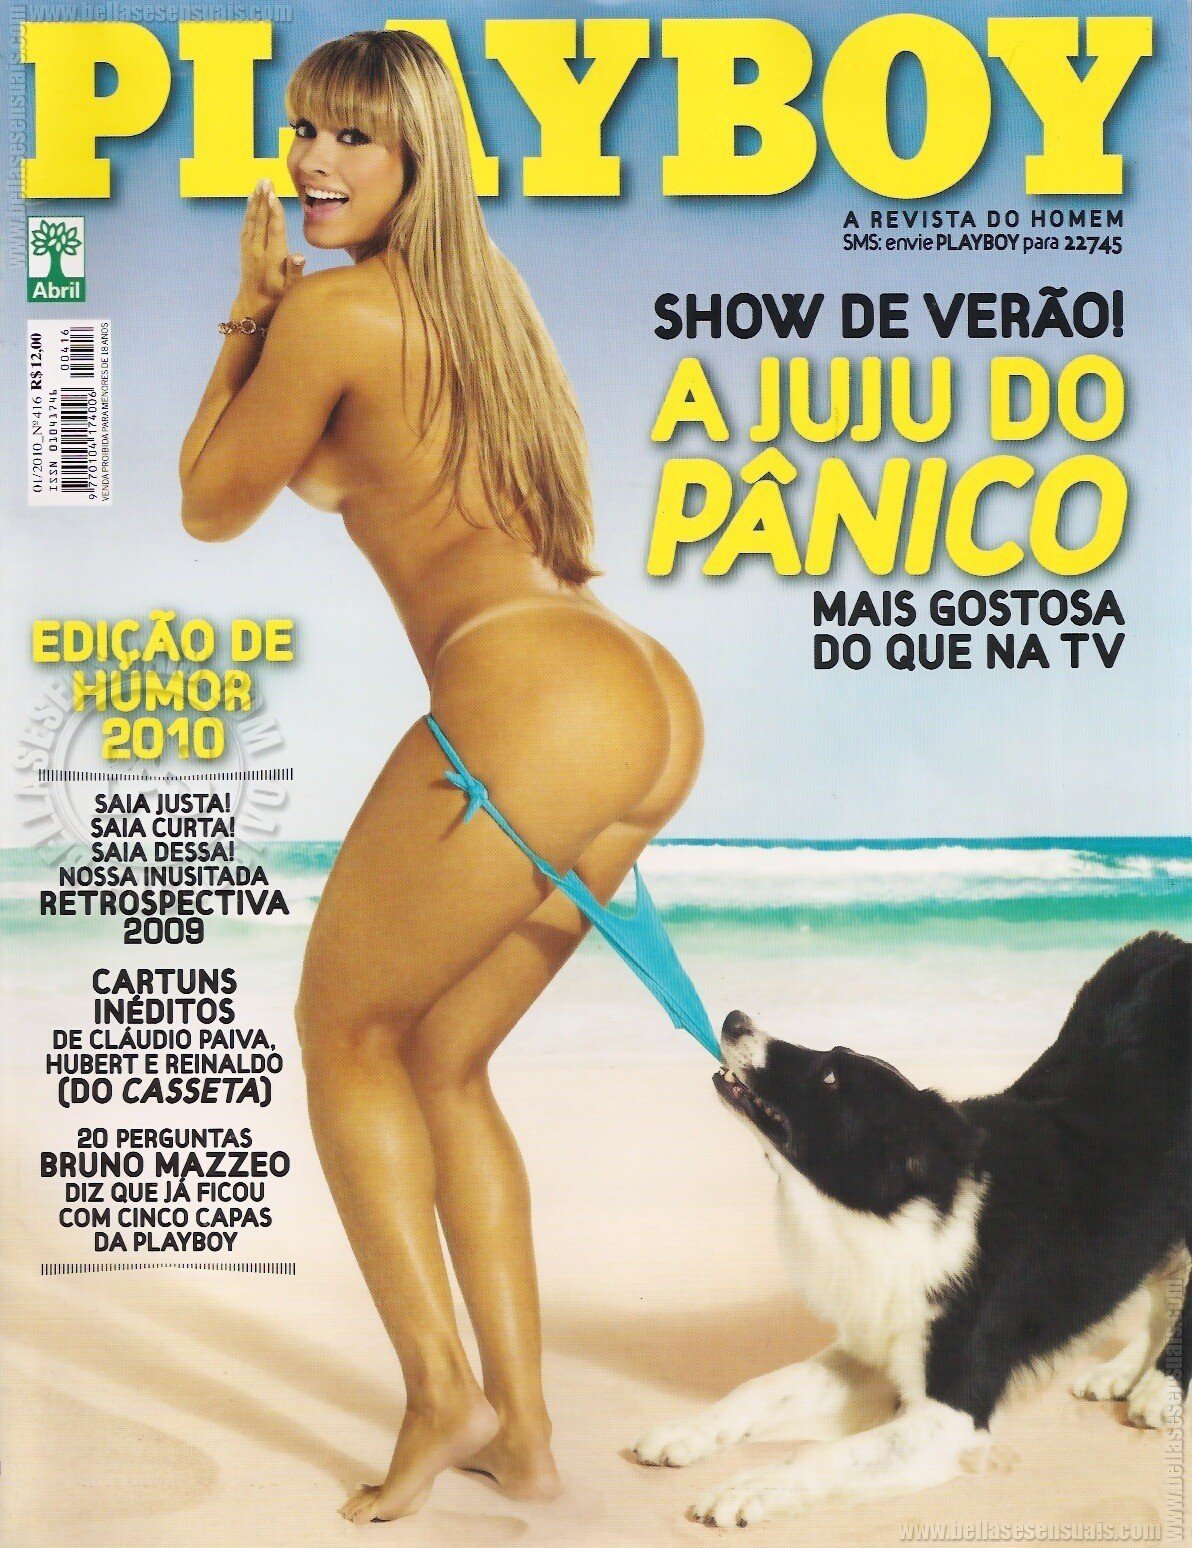 A revista playboy de Janeiro traz como capa a modelo Juliana Salimeni